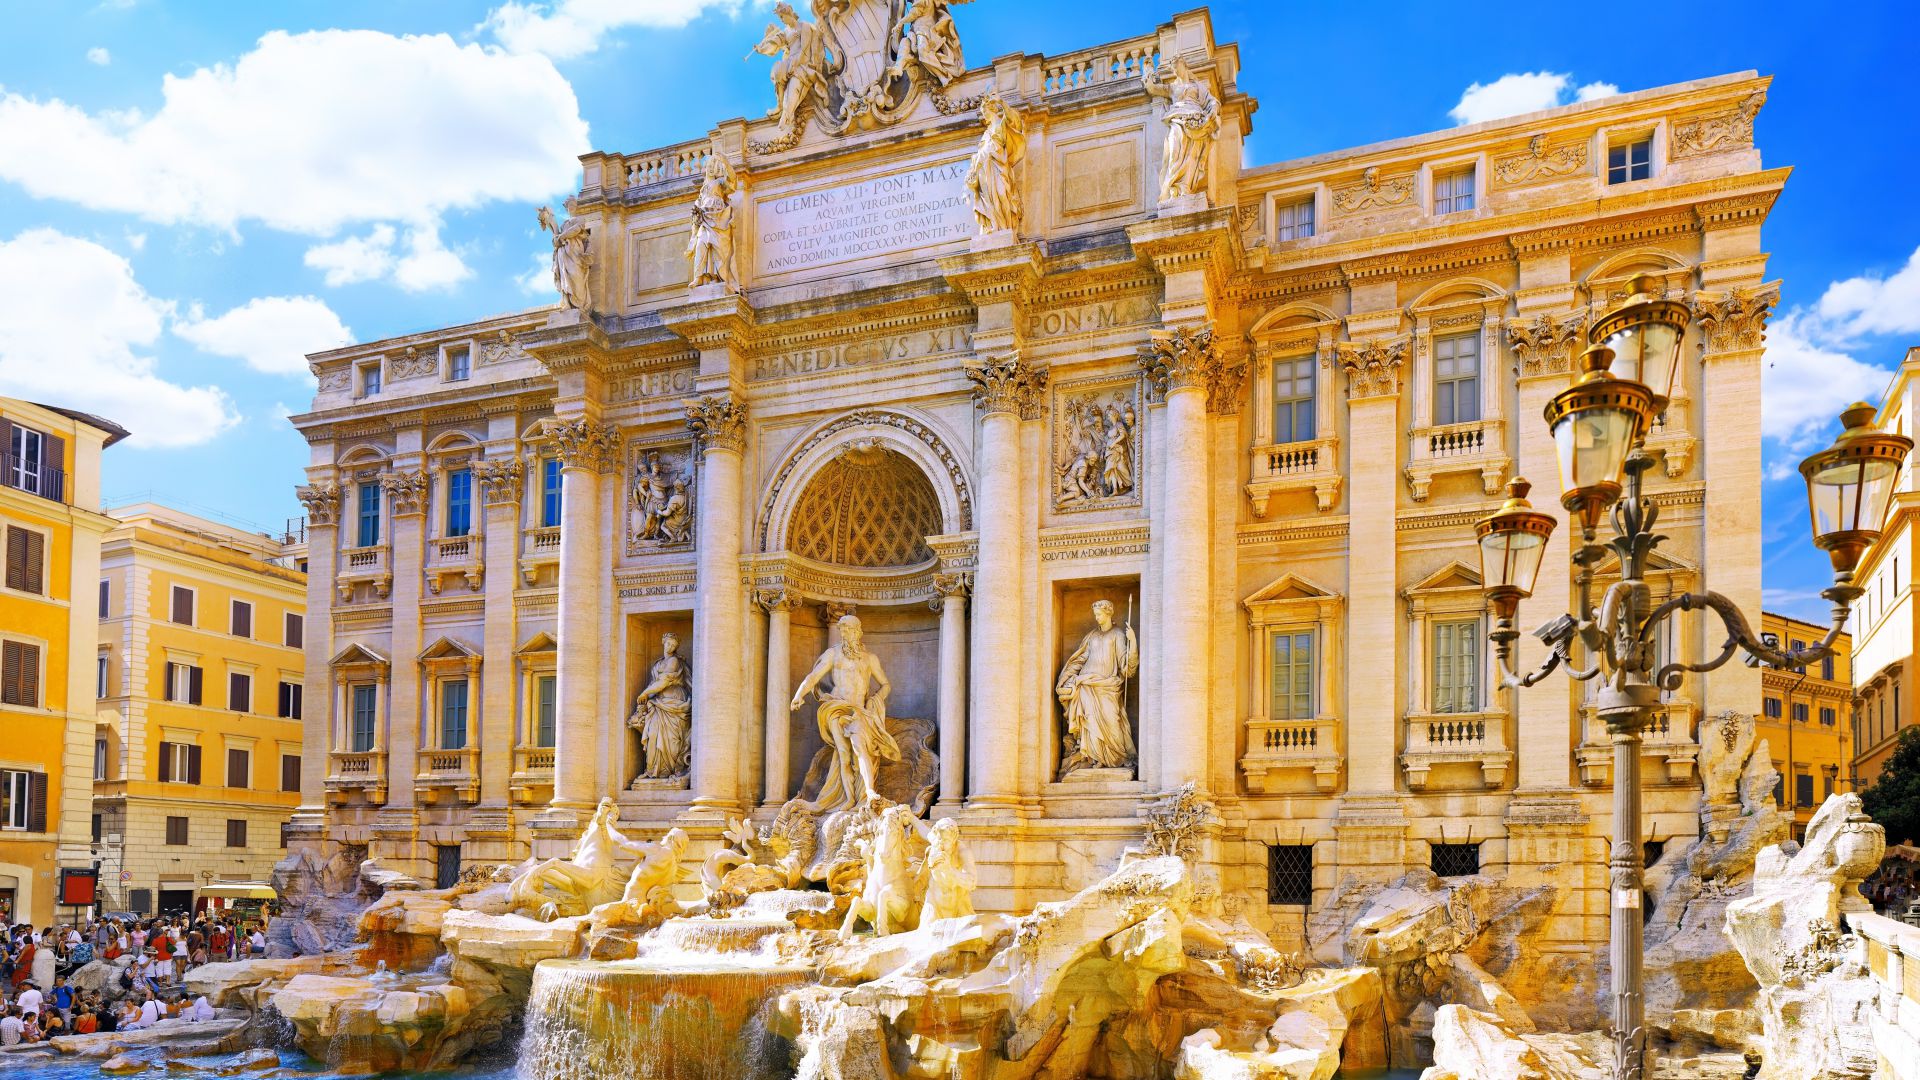 Trevi Fountain, Rome, Italy, Tourism, Travel (horizontal)